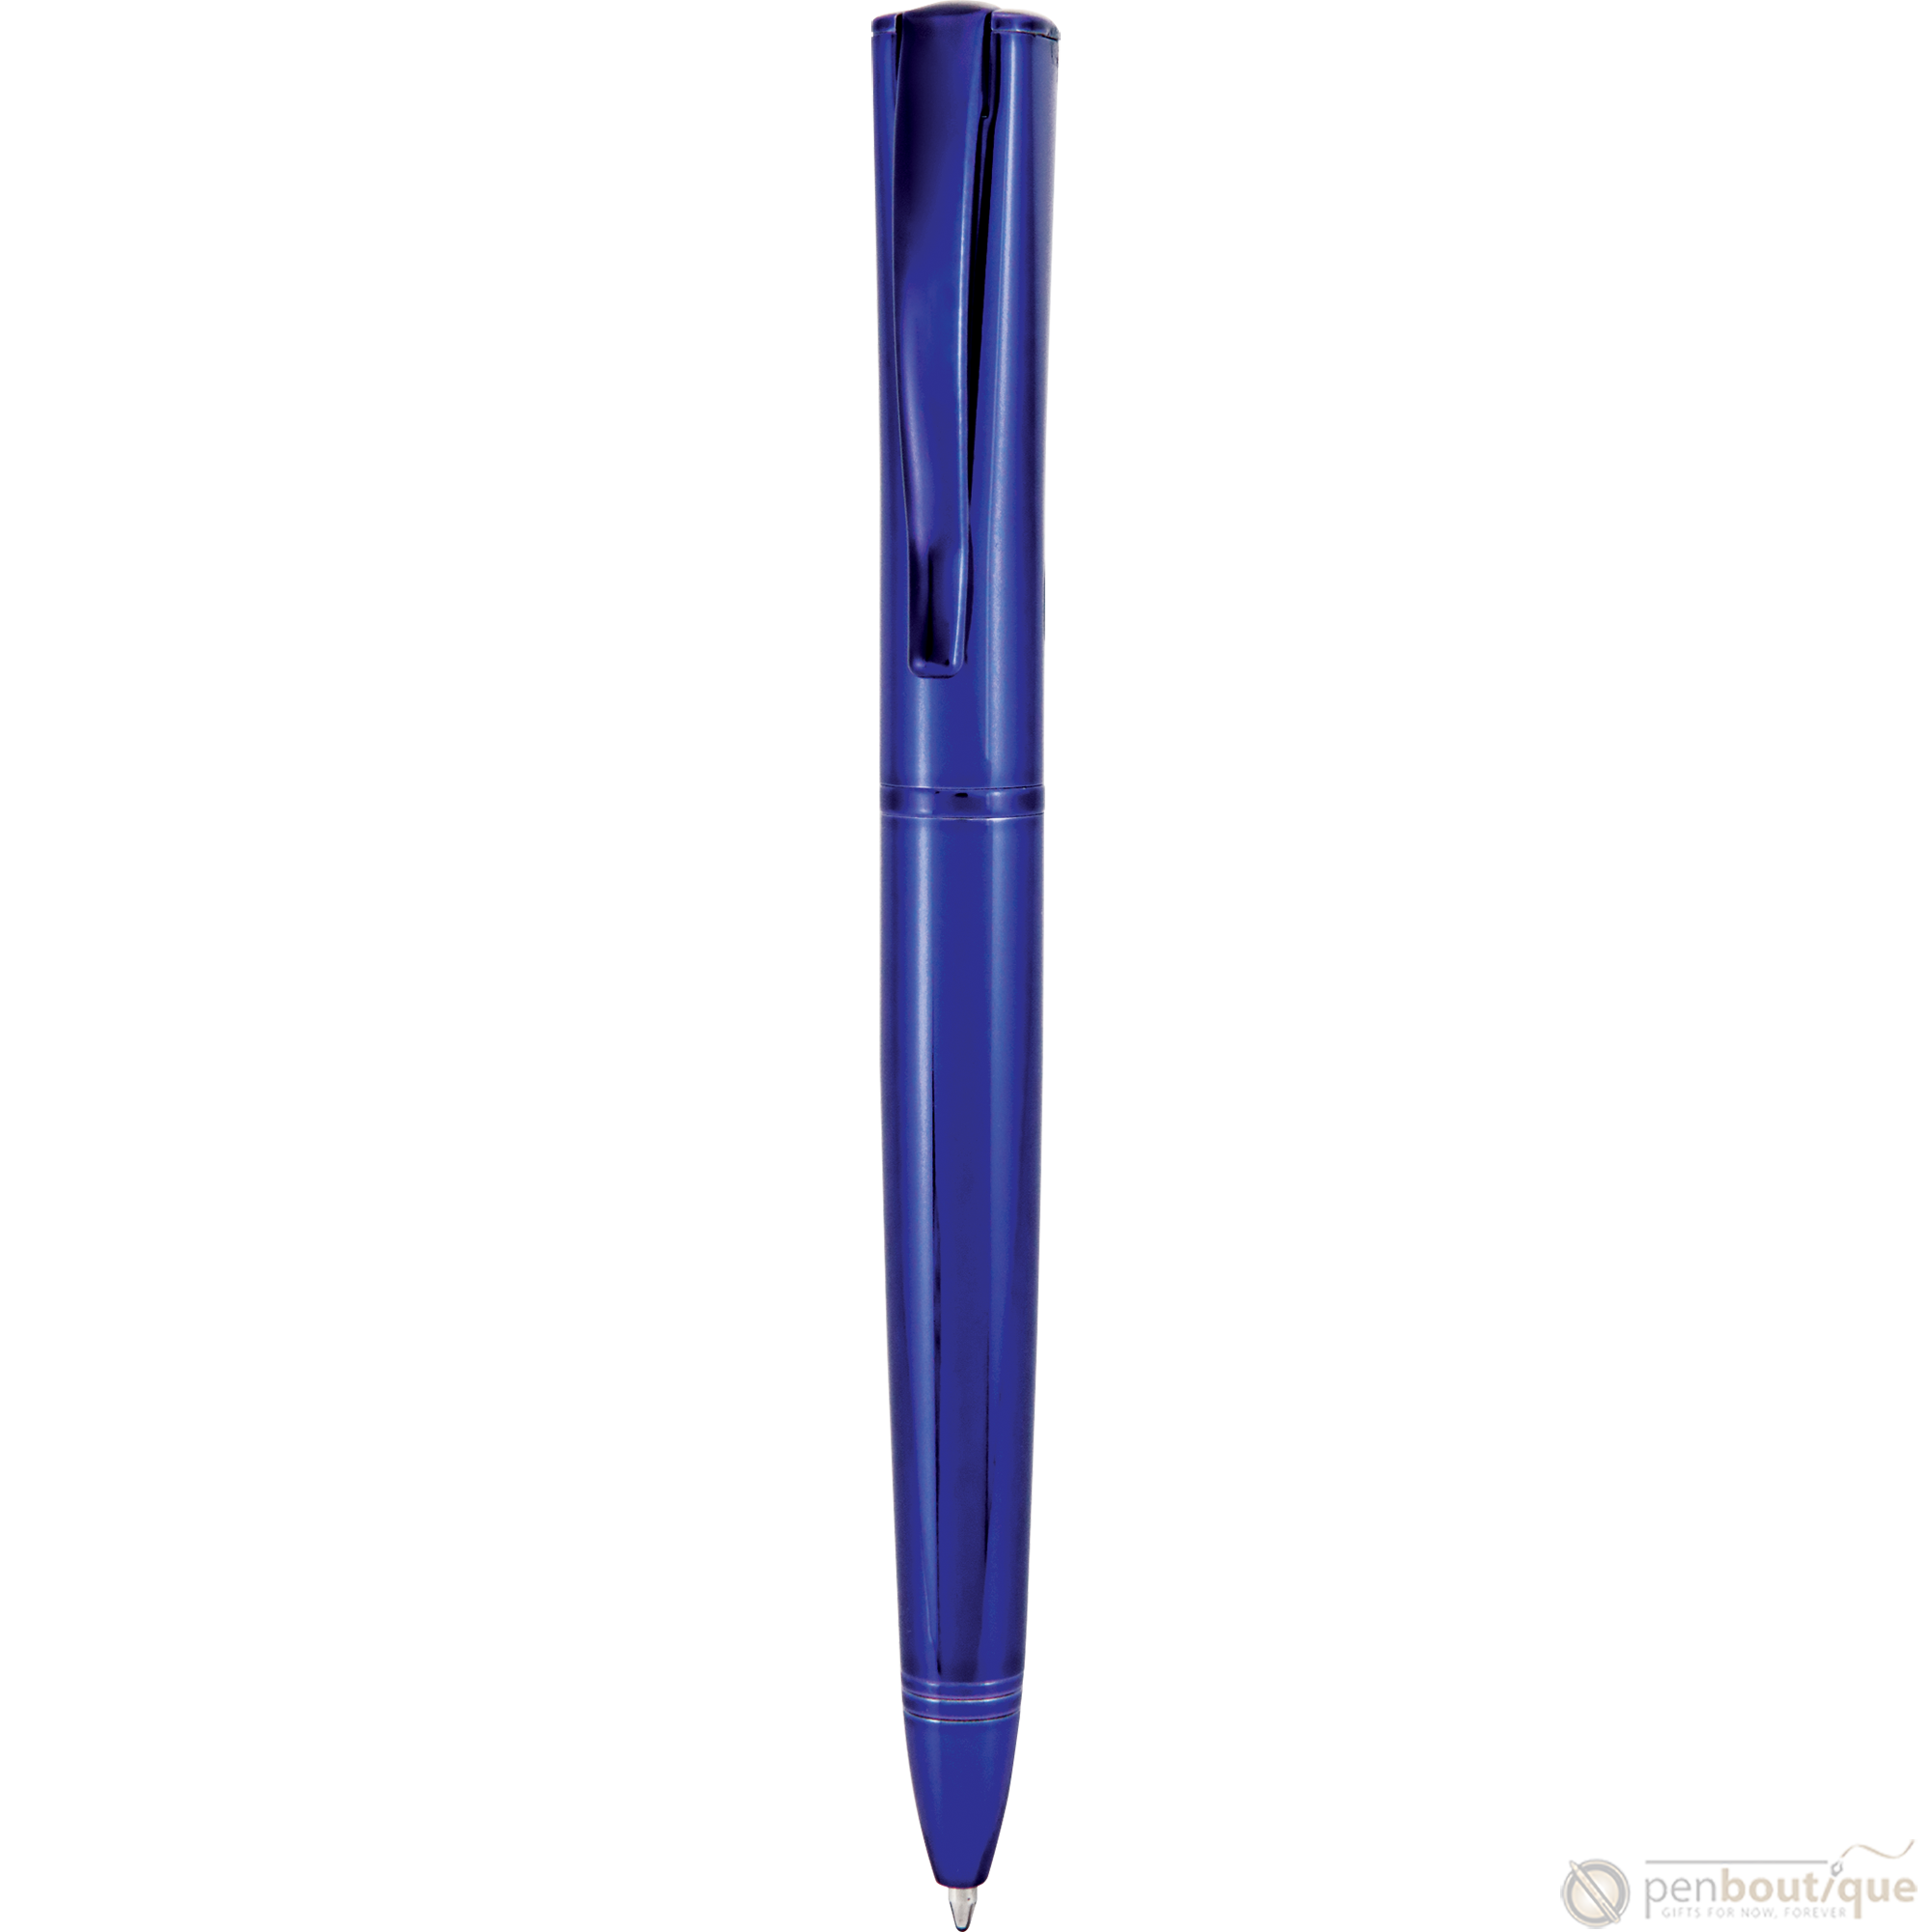 Monteverde Impressa Blue with Blue Trim Ballpoint Pen-Pen Boutique Ltd